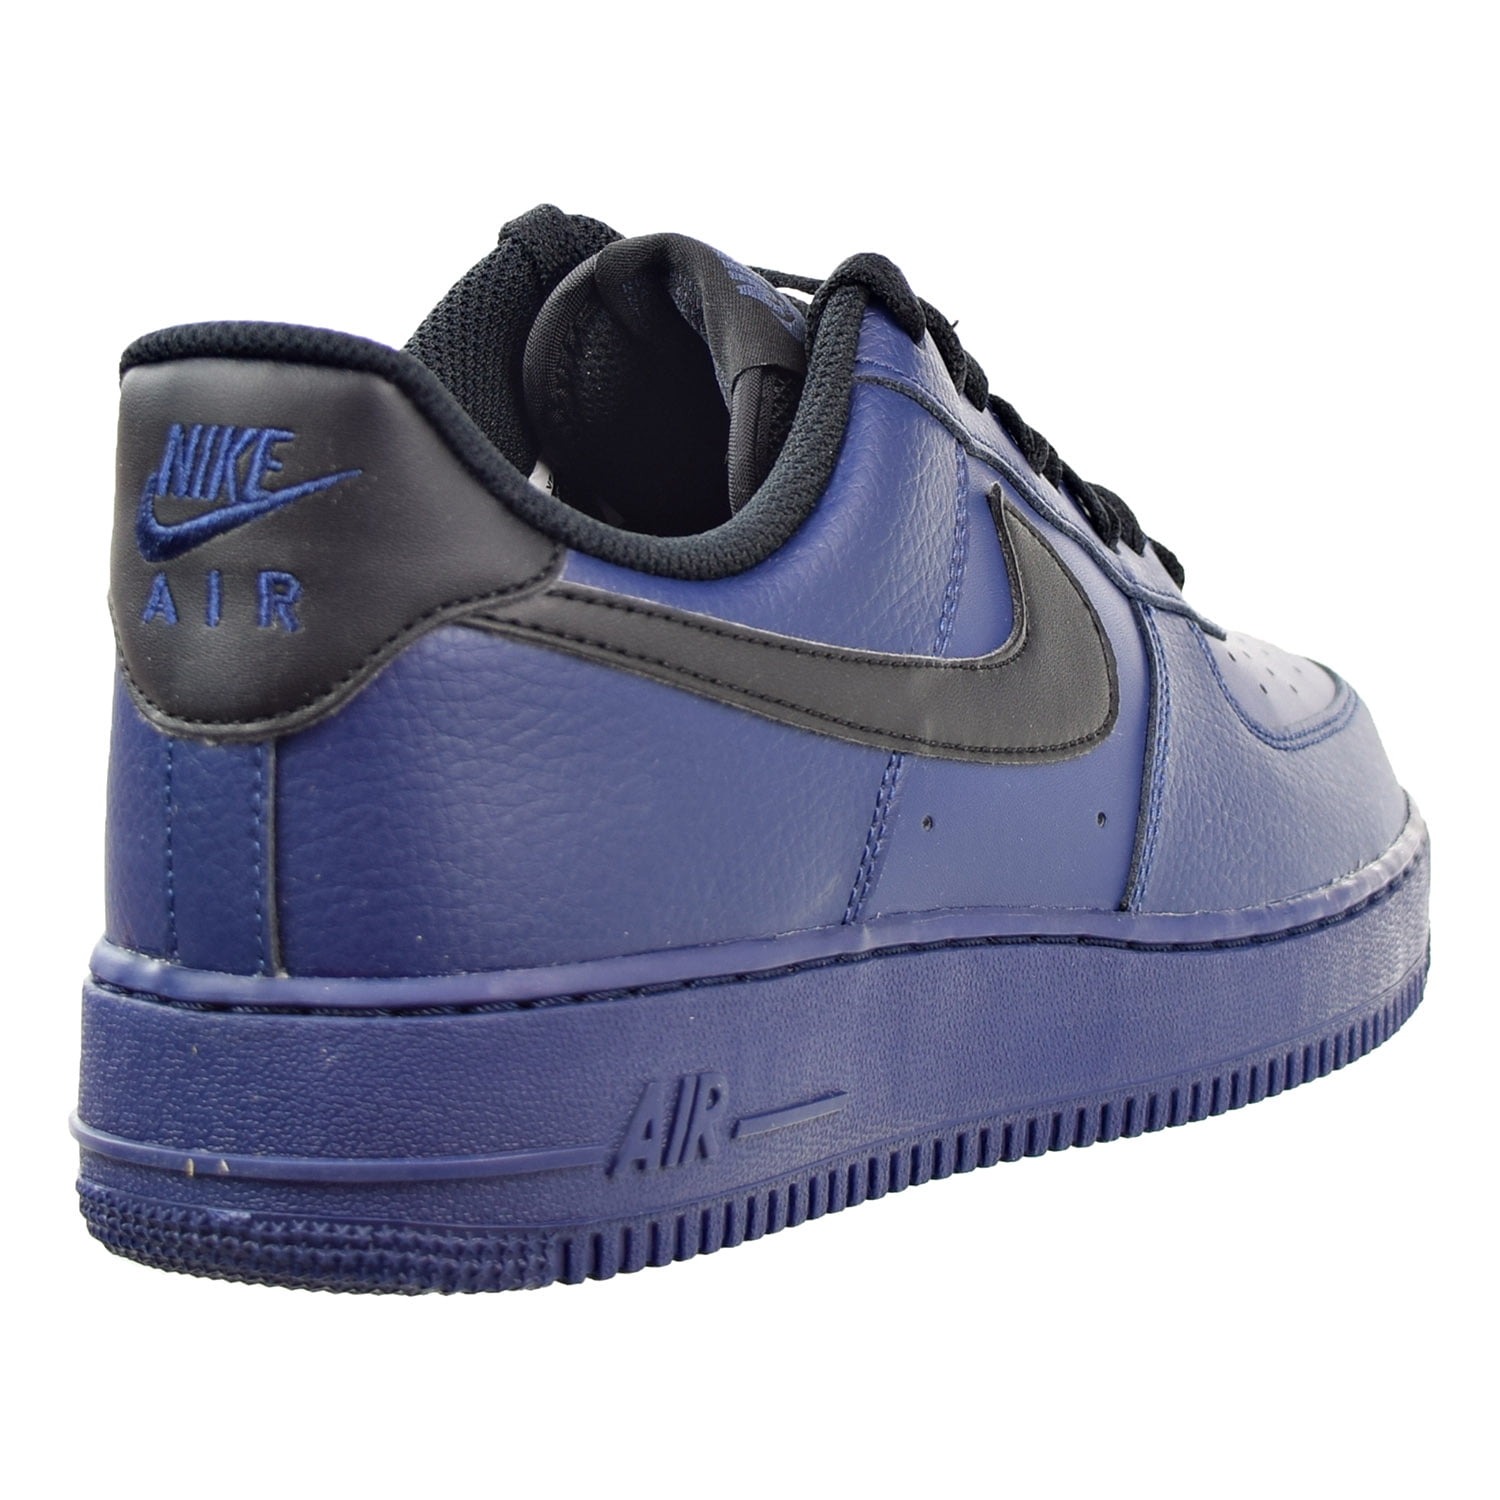 Nike Air Force 1 Mid '07 Binary blue/binary blue-white - 315123-410